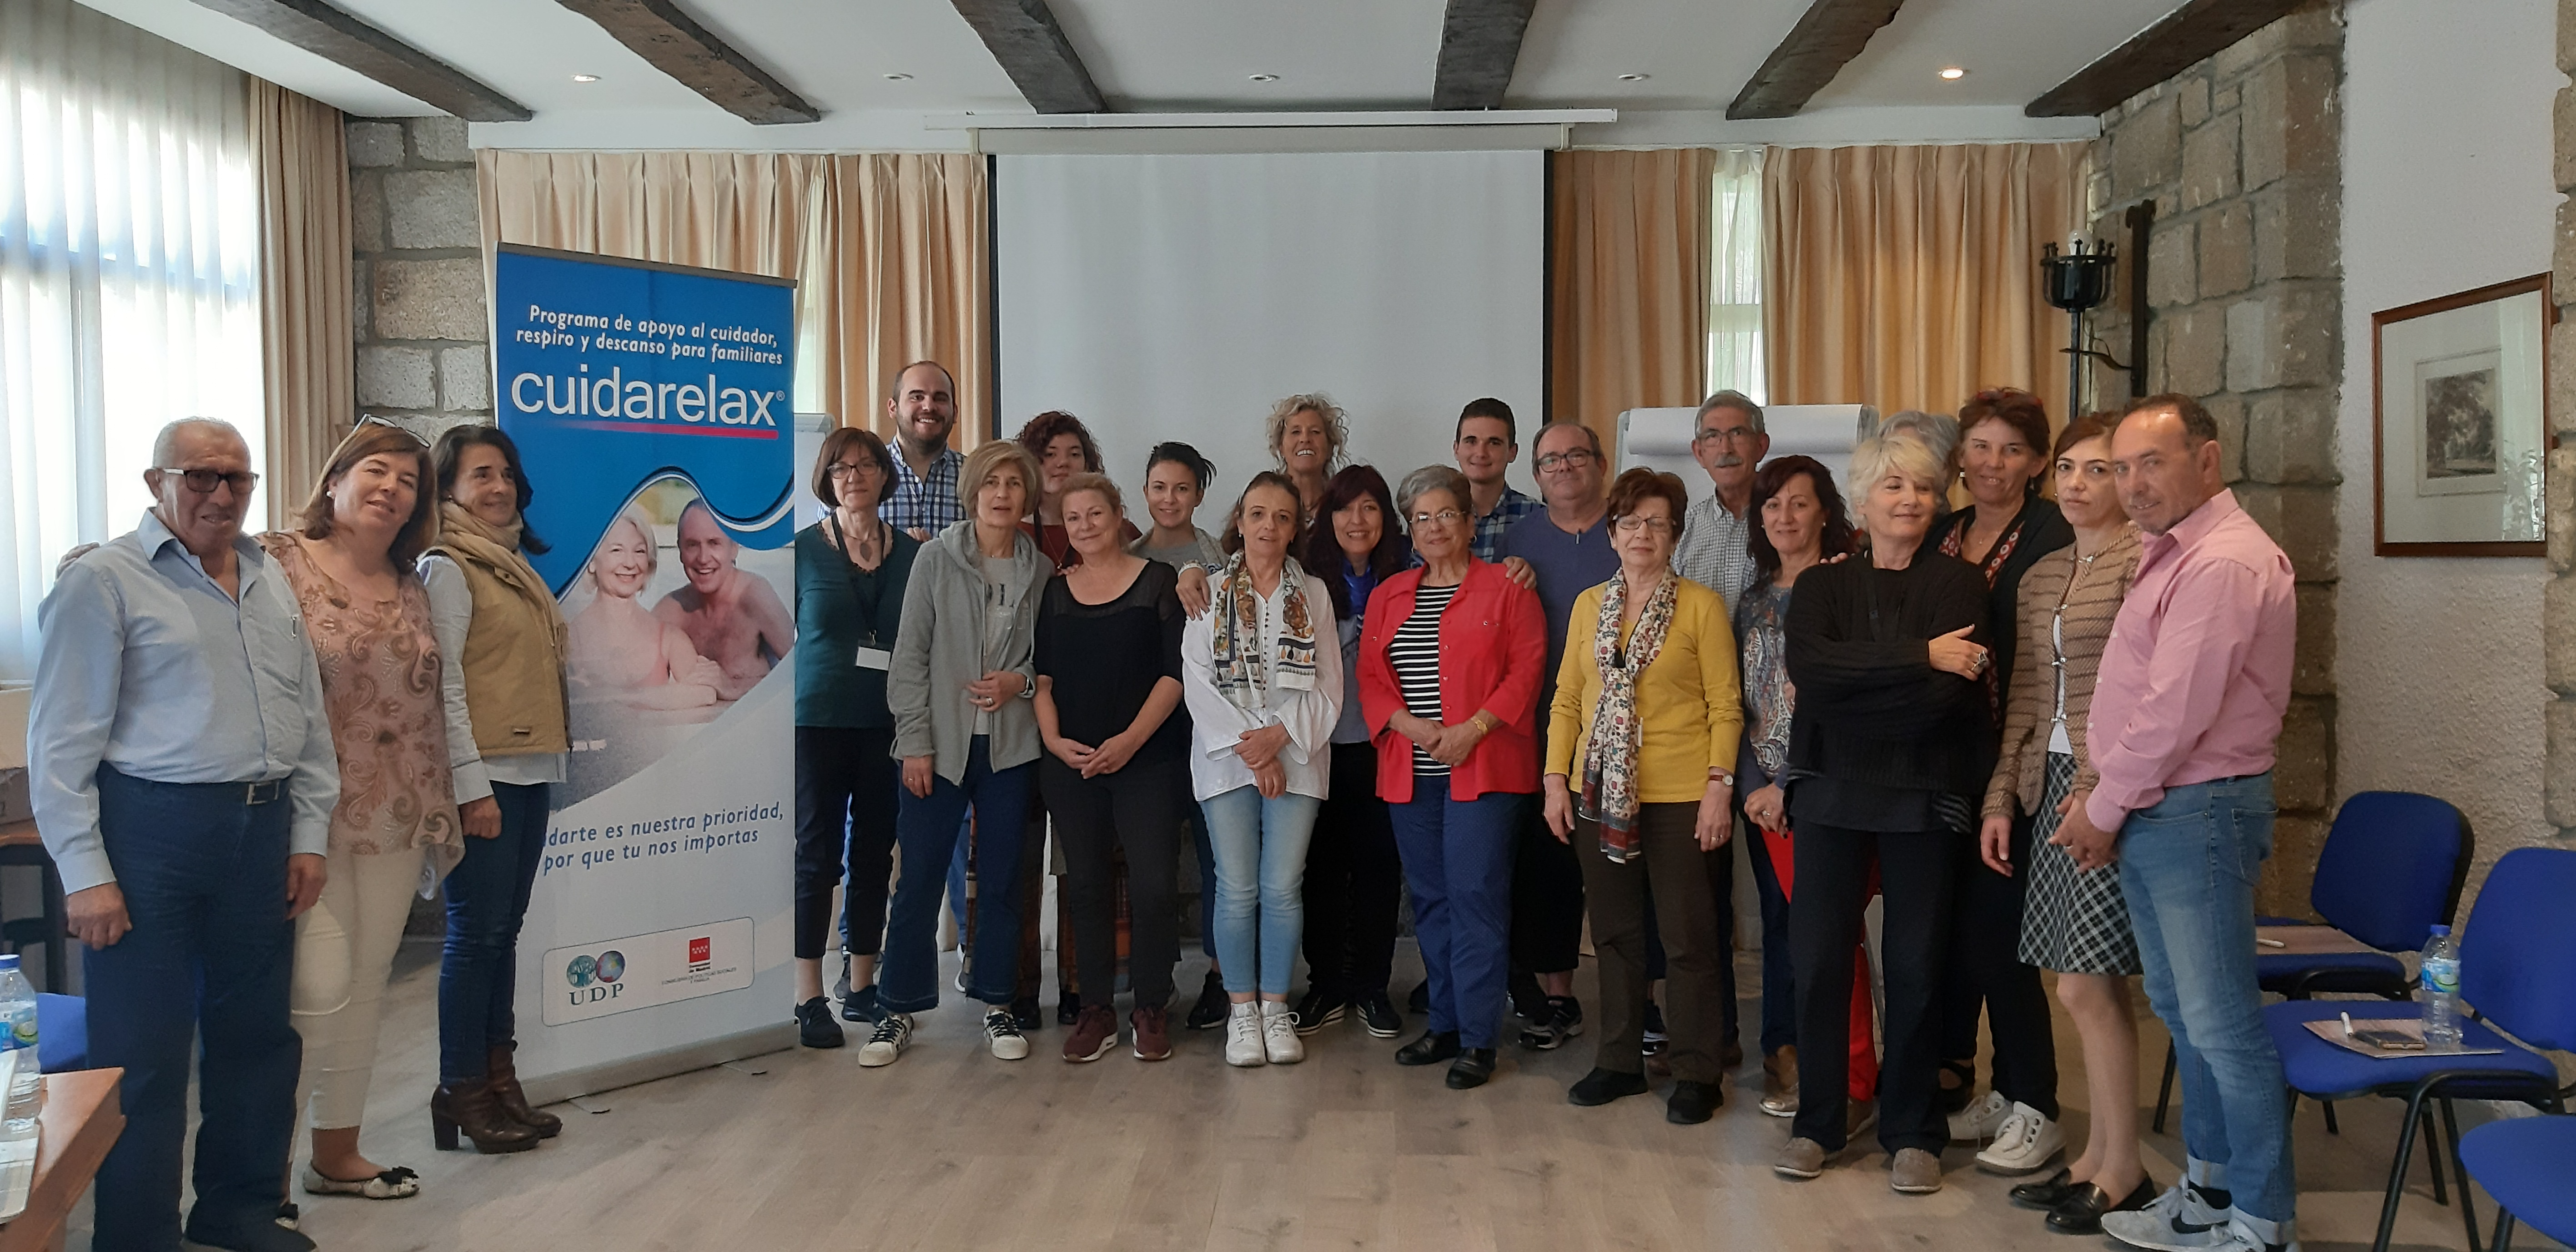 Segundo encuentro de formación y apoyo Cuidarelax Madrid, junto a familiares cuidadores de mayores dependientes